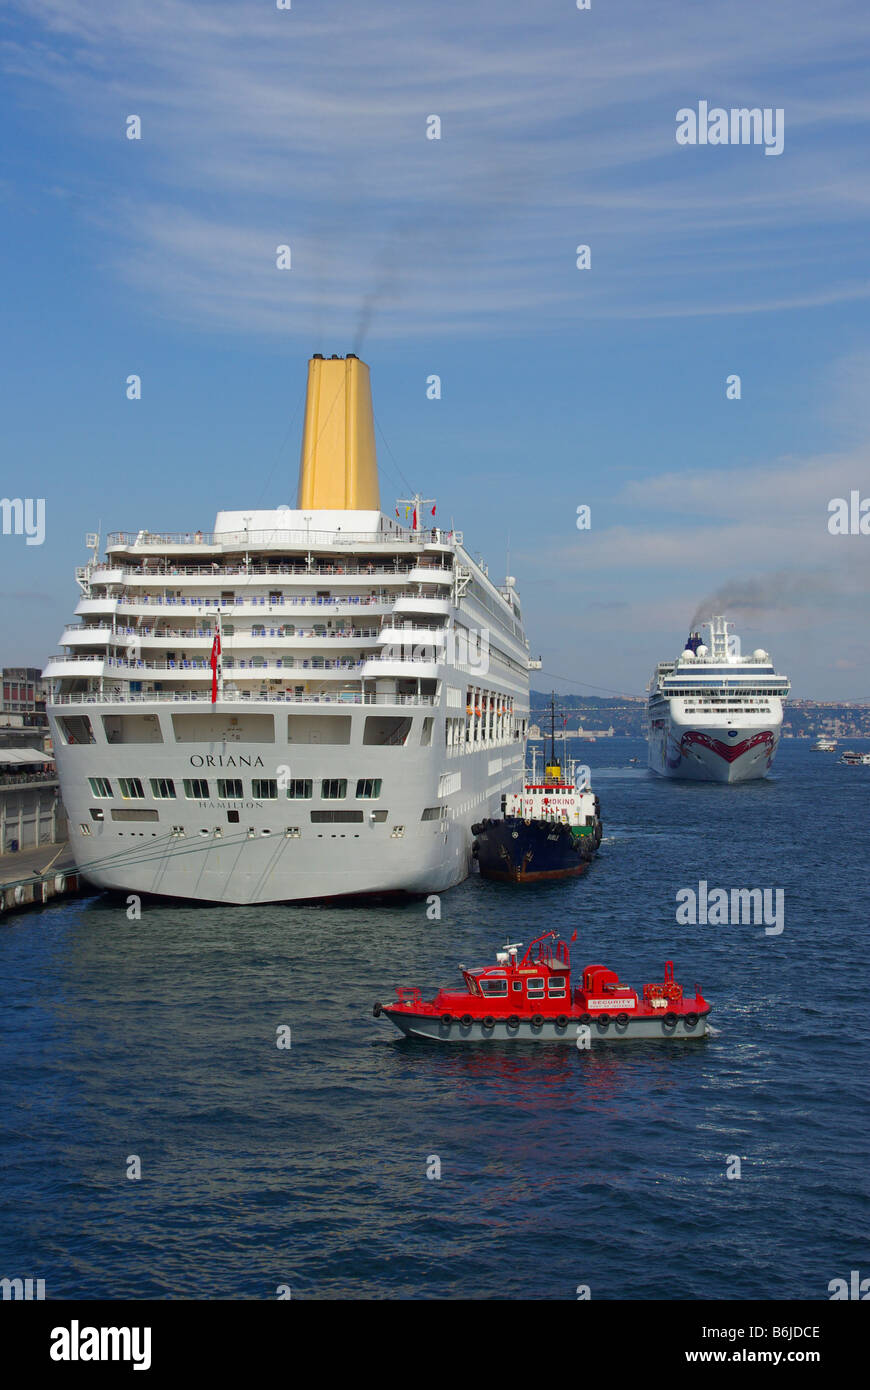 Istanbul Port am Bosporus waterway cruise ship P&O Oriana mit roten Sicherheit Einführung & Norwegian Jewel Ocean Liner über die Türkei Europa Stockfoto